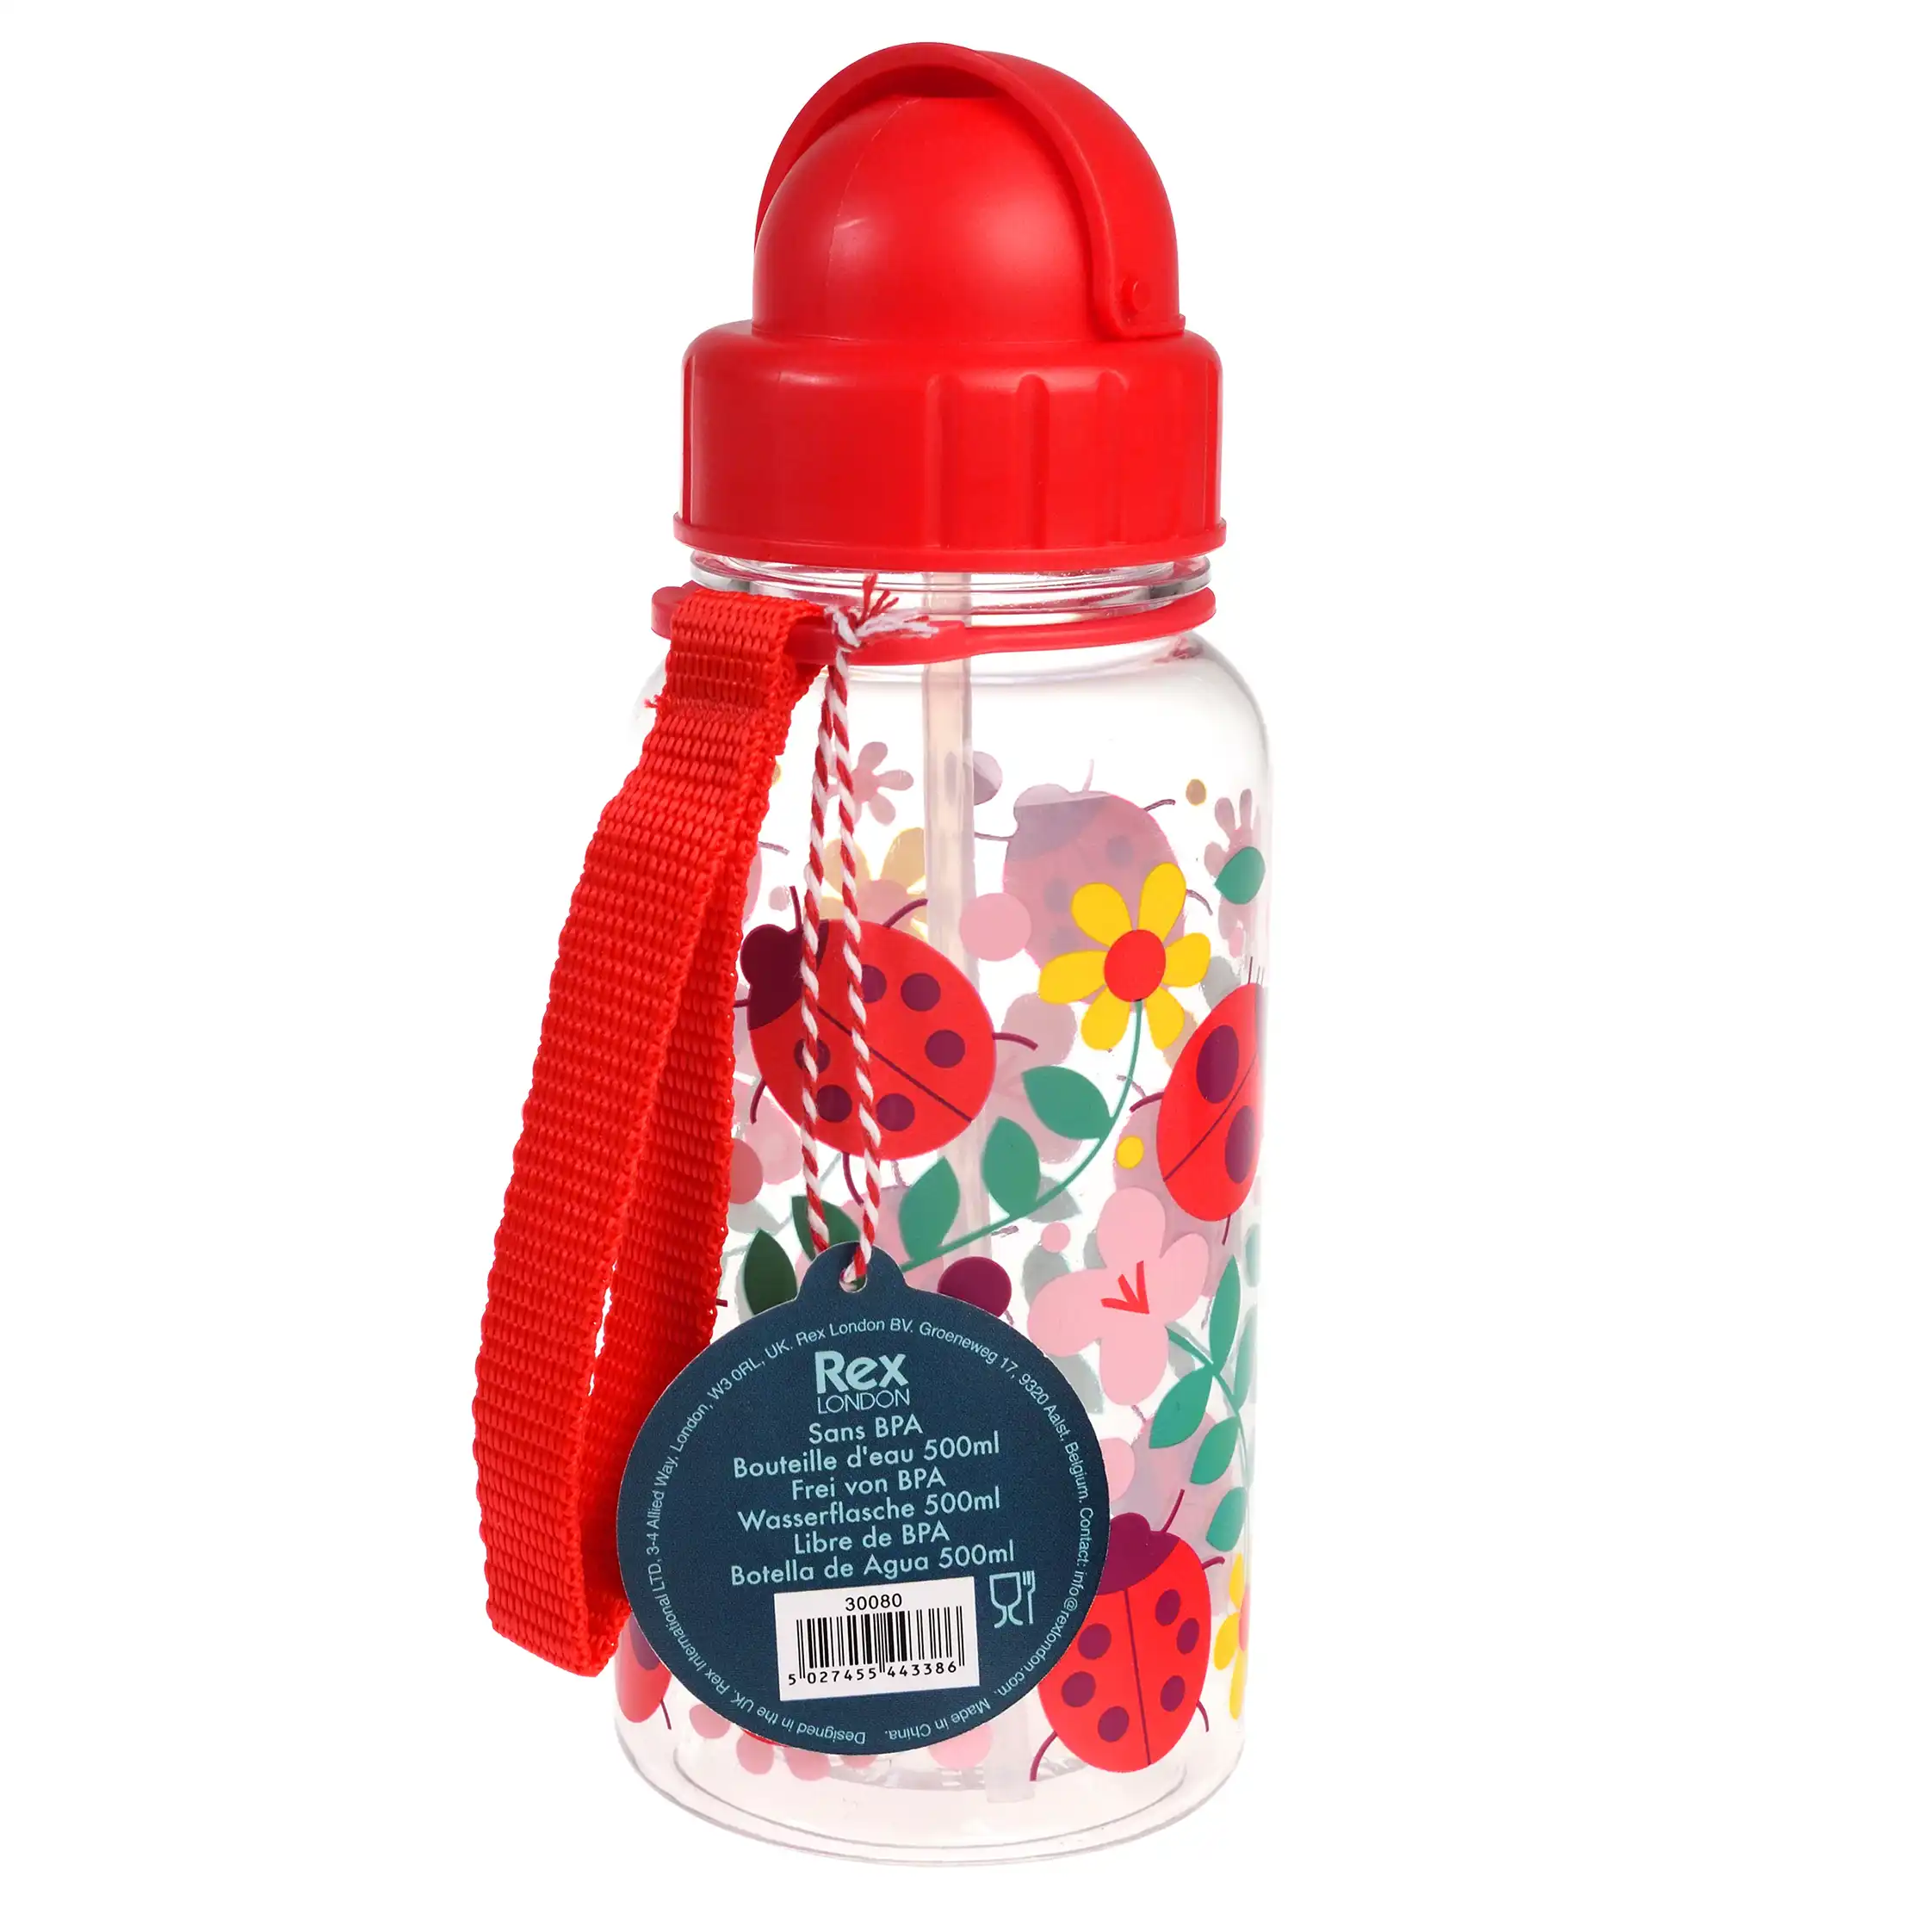 children's water bottle with straw 500ml - ladybird